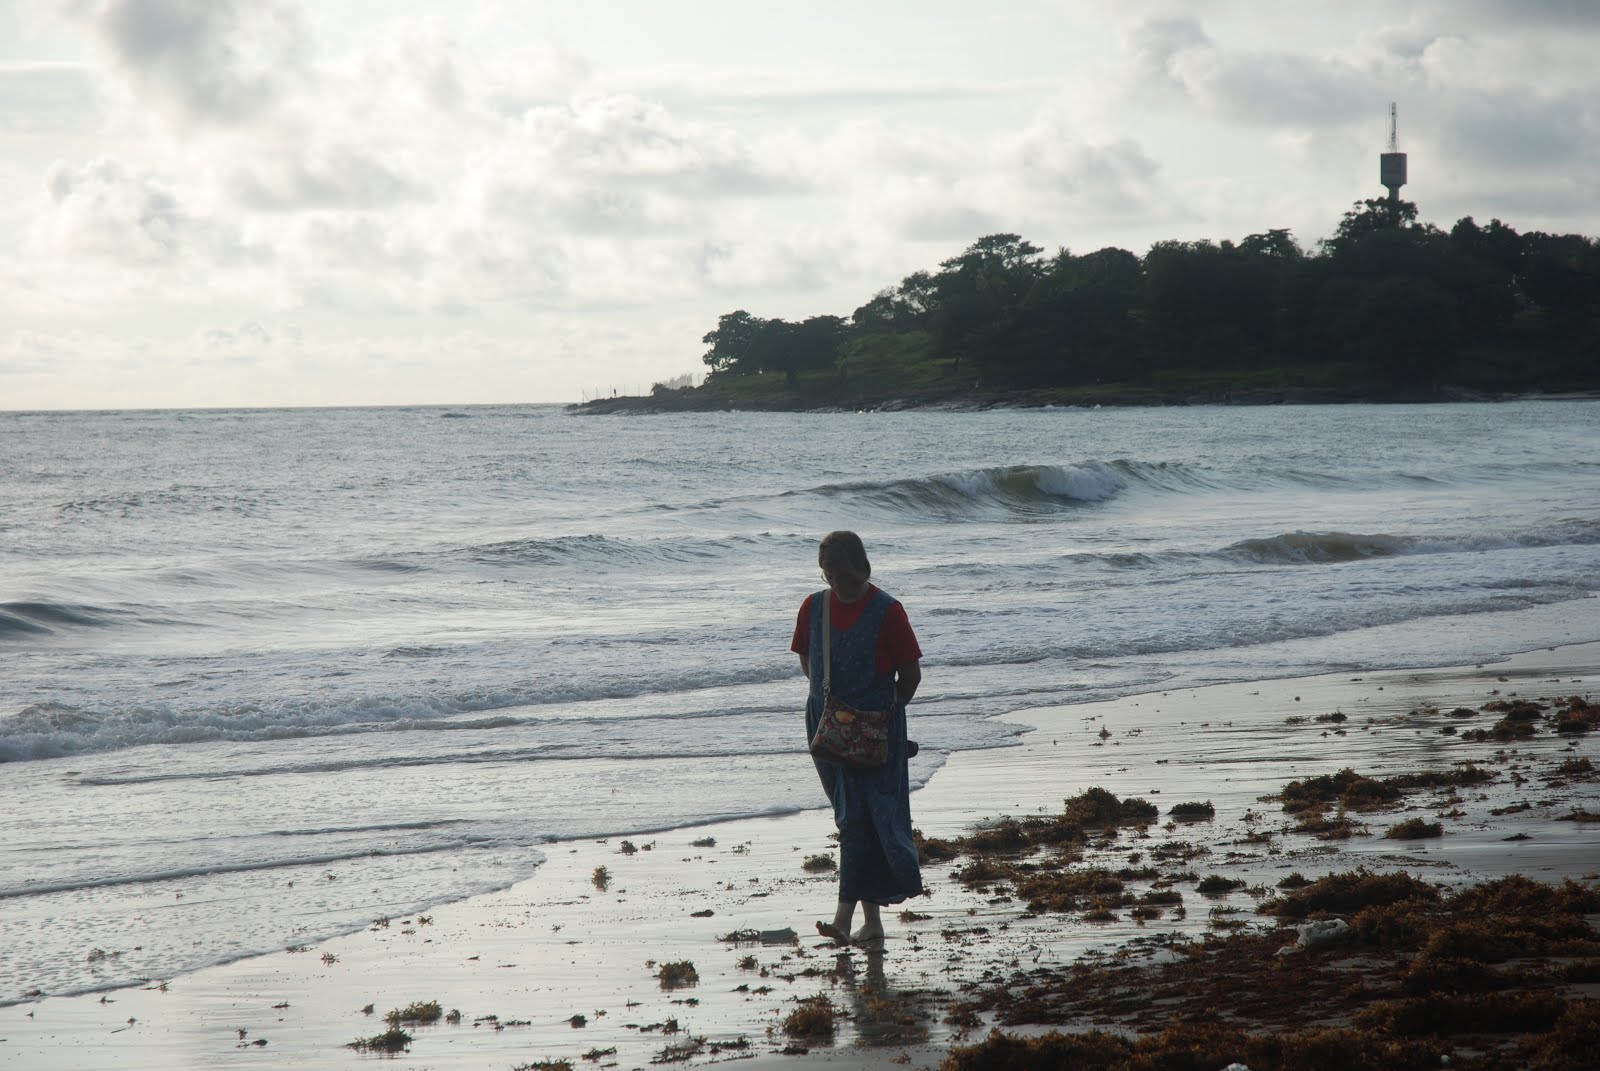 Walking the shoreline of Sierra Leone